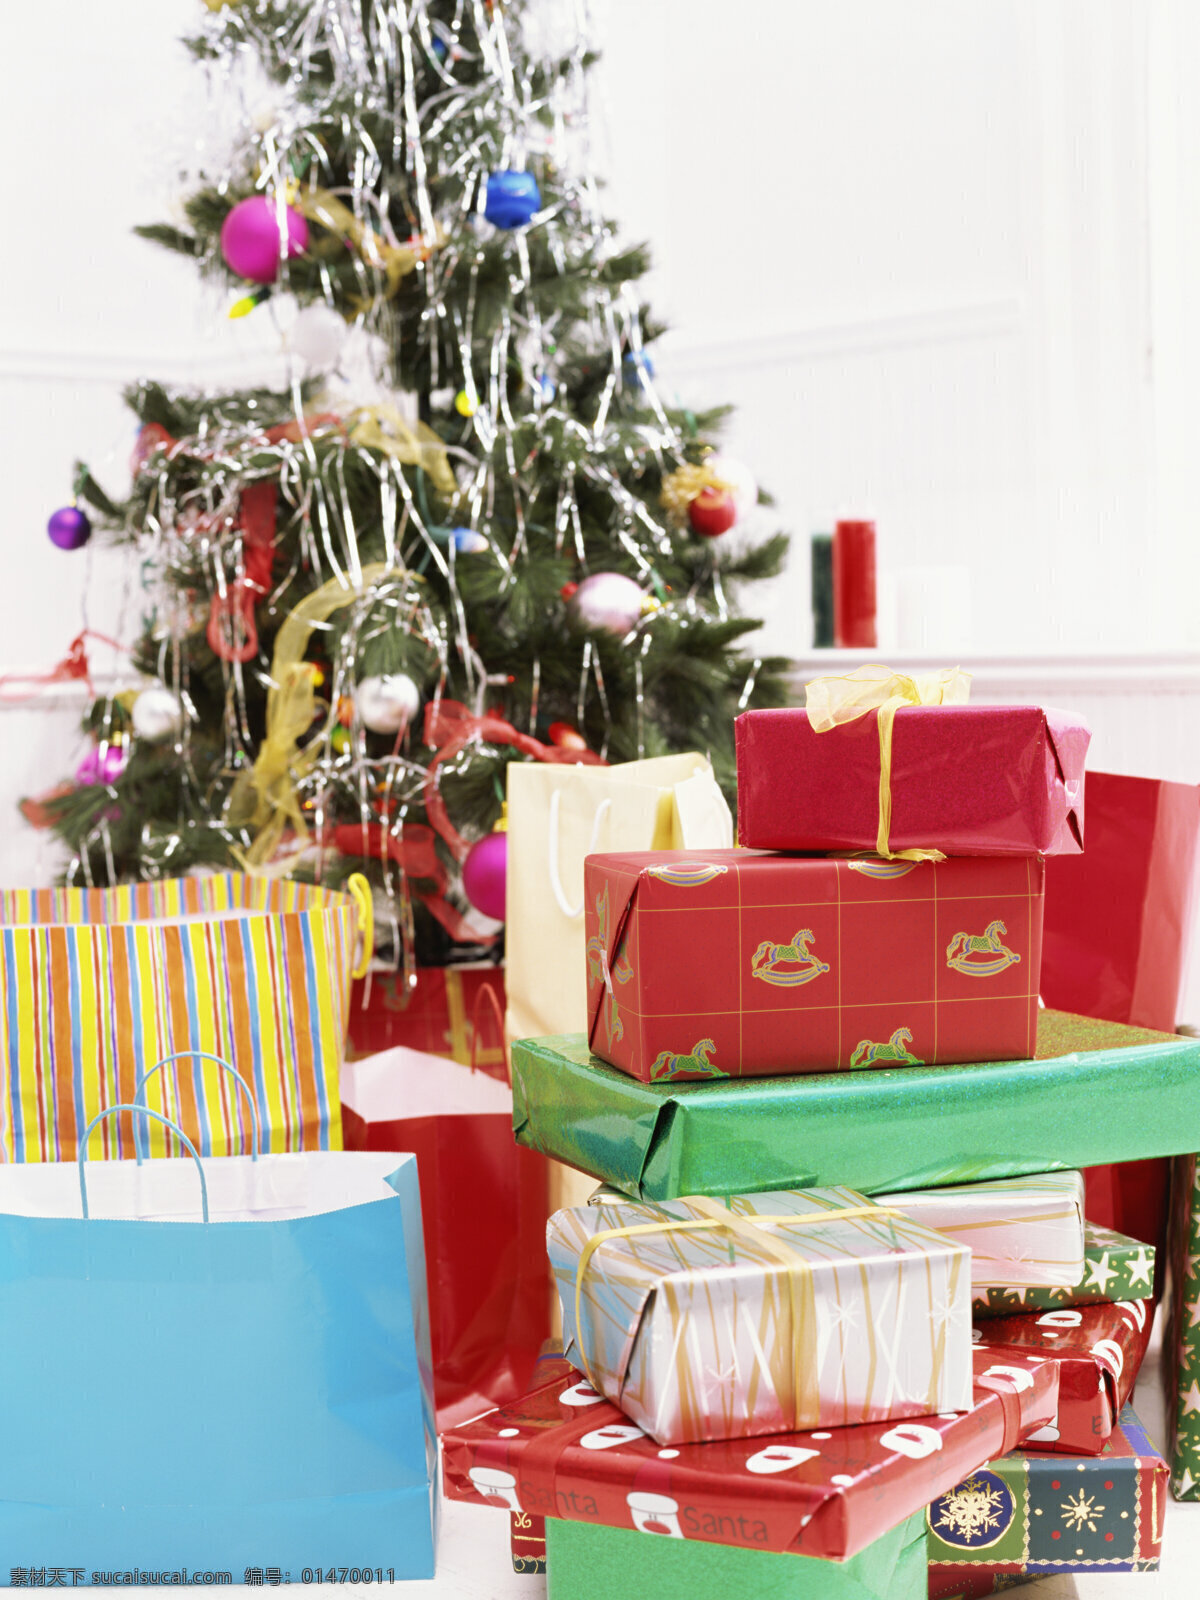 圣诞树 圣诞 礼物 圣诞节 新年素材 圣诞礼物 礼包 礼品 手提袋 生活人物 人物图片